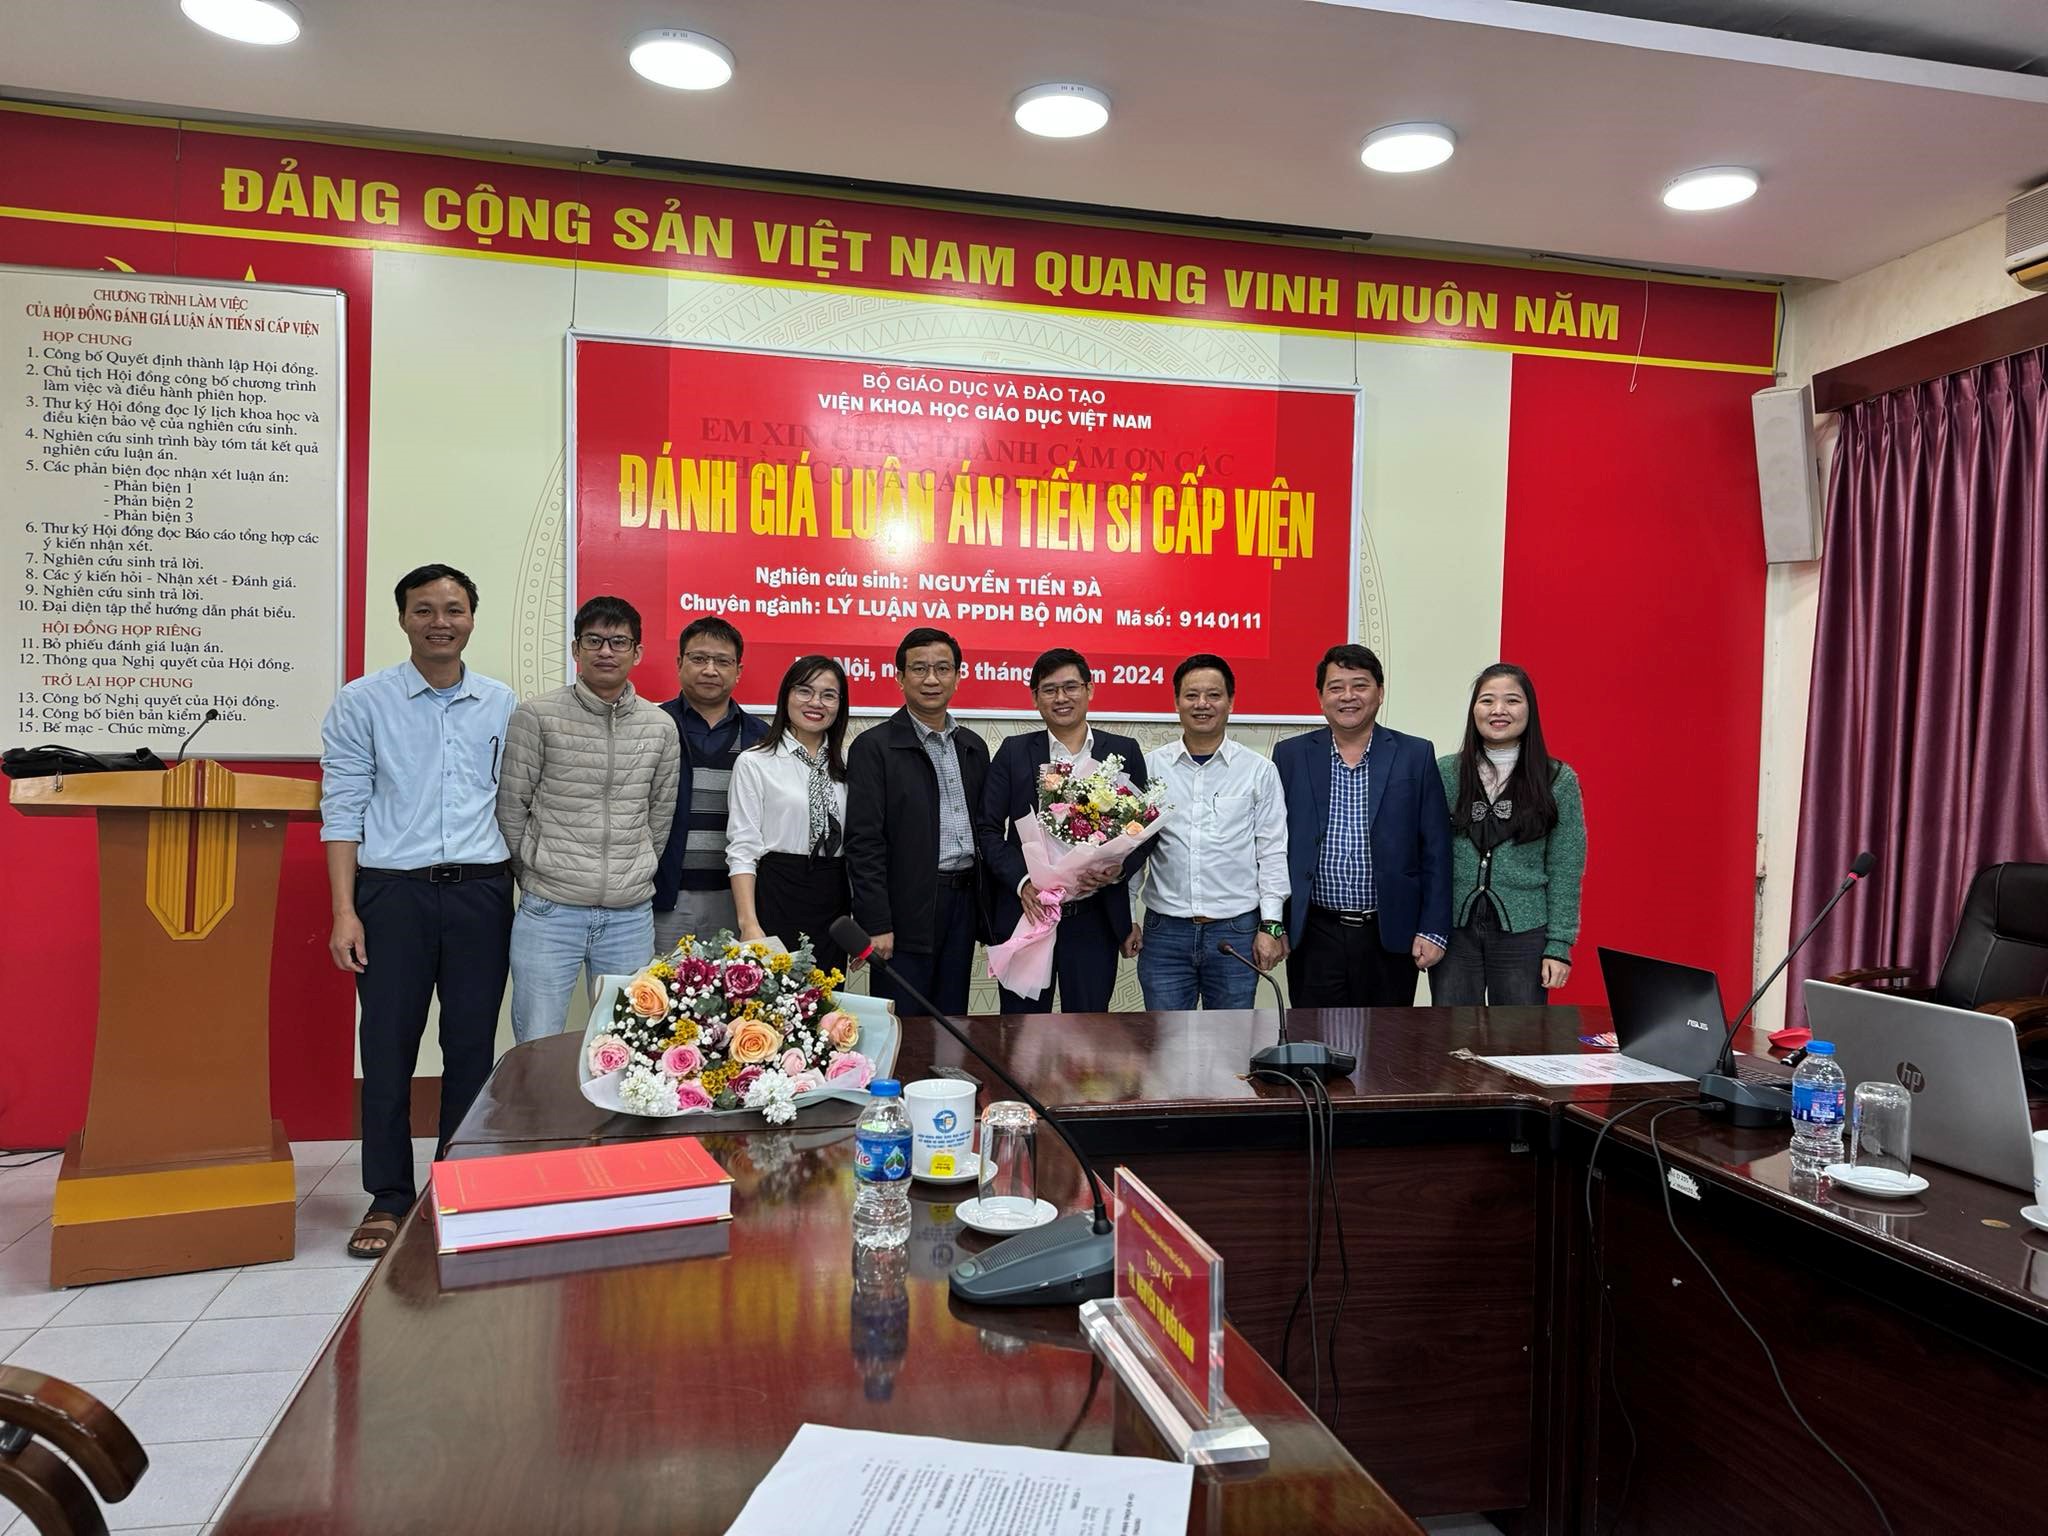 Nghiên cứu sinh Nguyễn Tiến Đà, Giảng viên Khoa Khoa học tự nhiên, Trường Đại học Hồng Đức đã bảo vệ thành công luận án tiến sĩ  tại viện Khoa học Giáo dục Việt Nam.